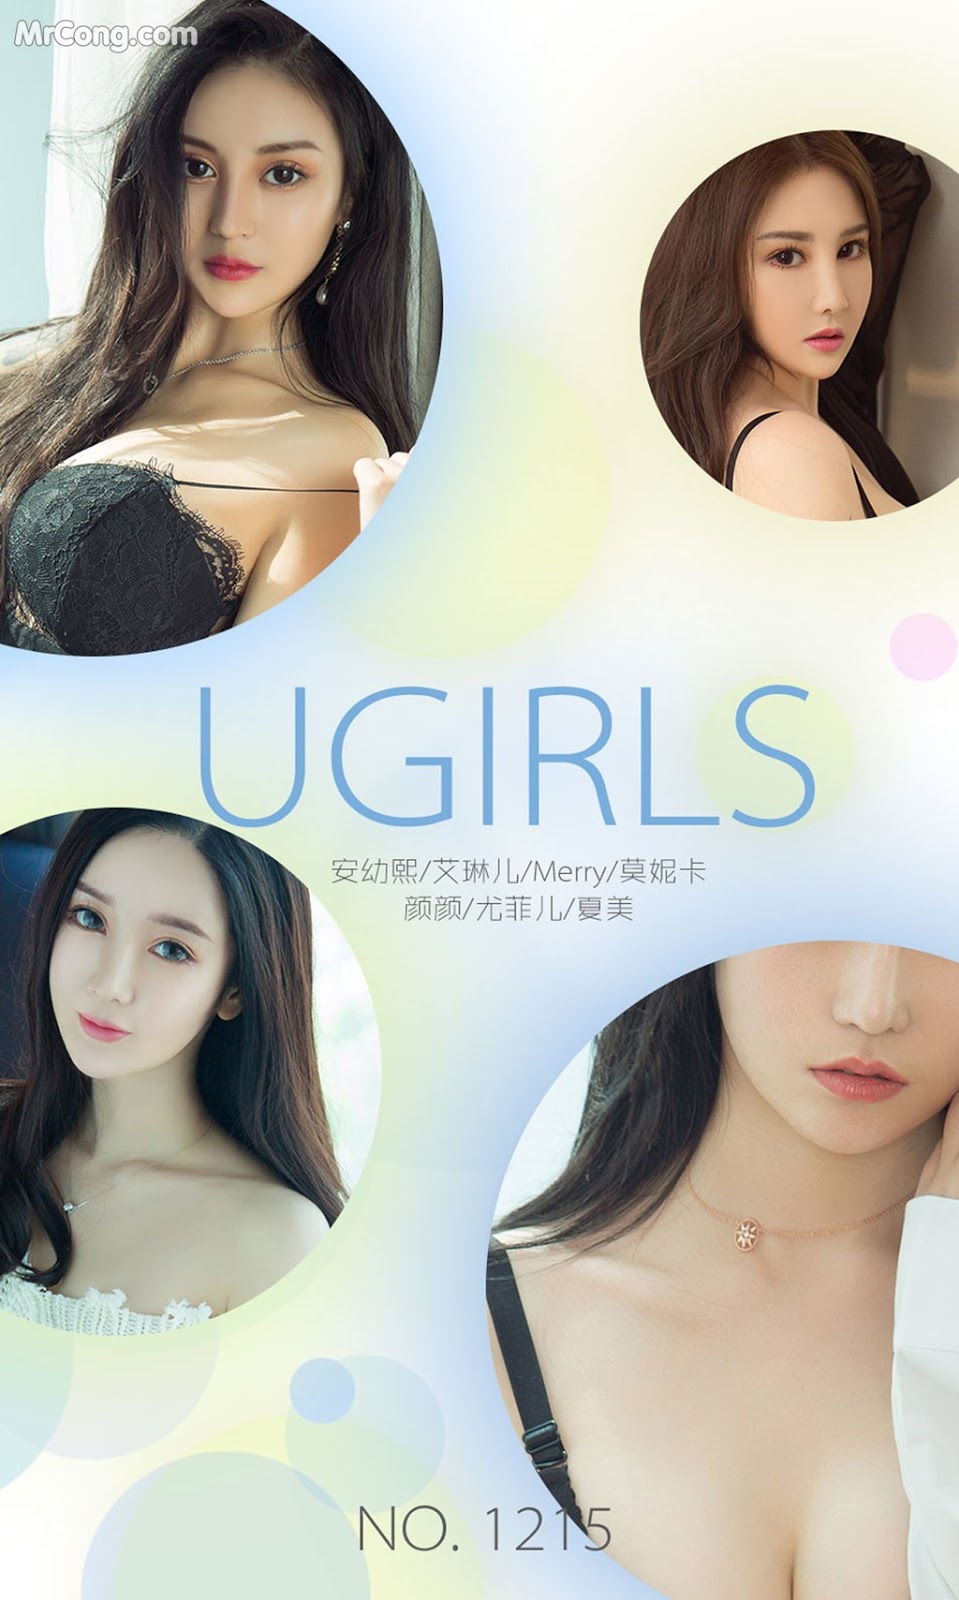 UGIRLS - Ai You Wu App No.1215: Various Models (35 photos)